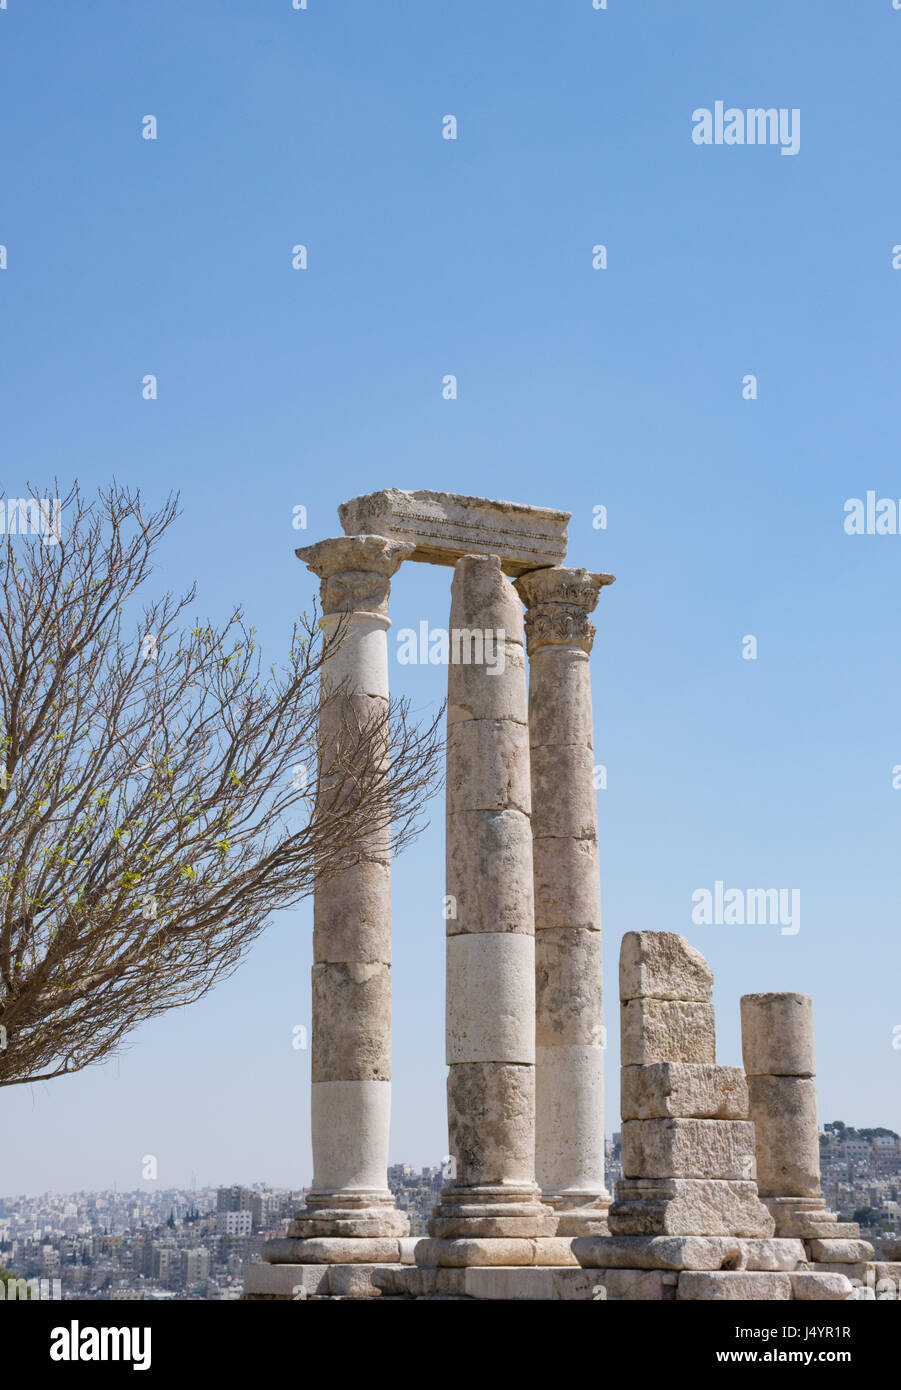 Die alten römischen Tempel des Herkules mit Säulen und geschnitzten Kapitellen auf der Zitadelle gegen einen tiefen blauen wolkenlosen Himmel mit einem Ast vor. Stockfoto